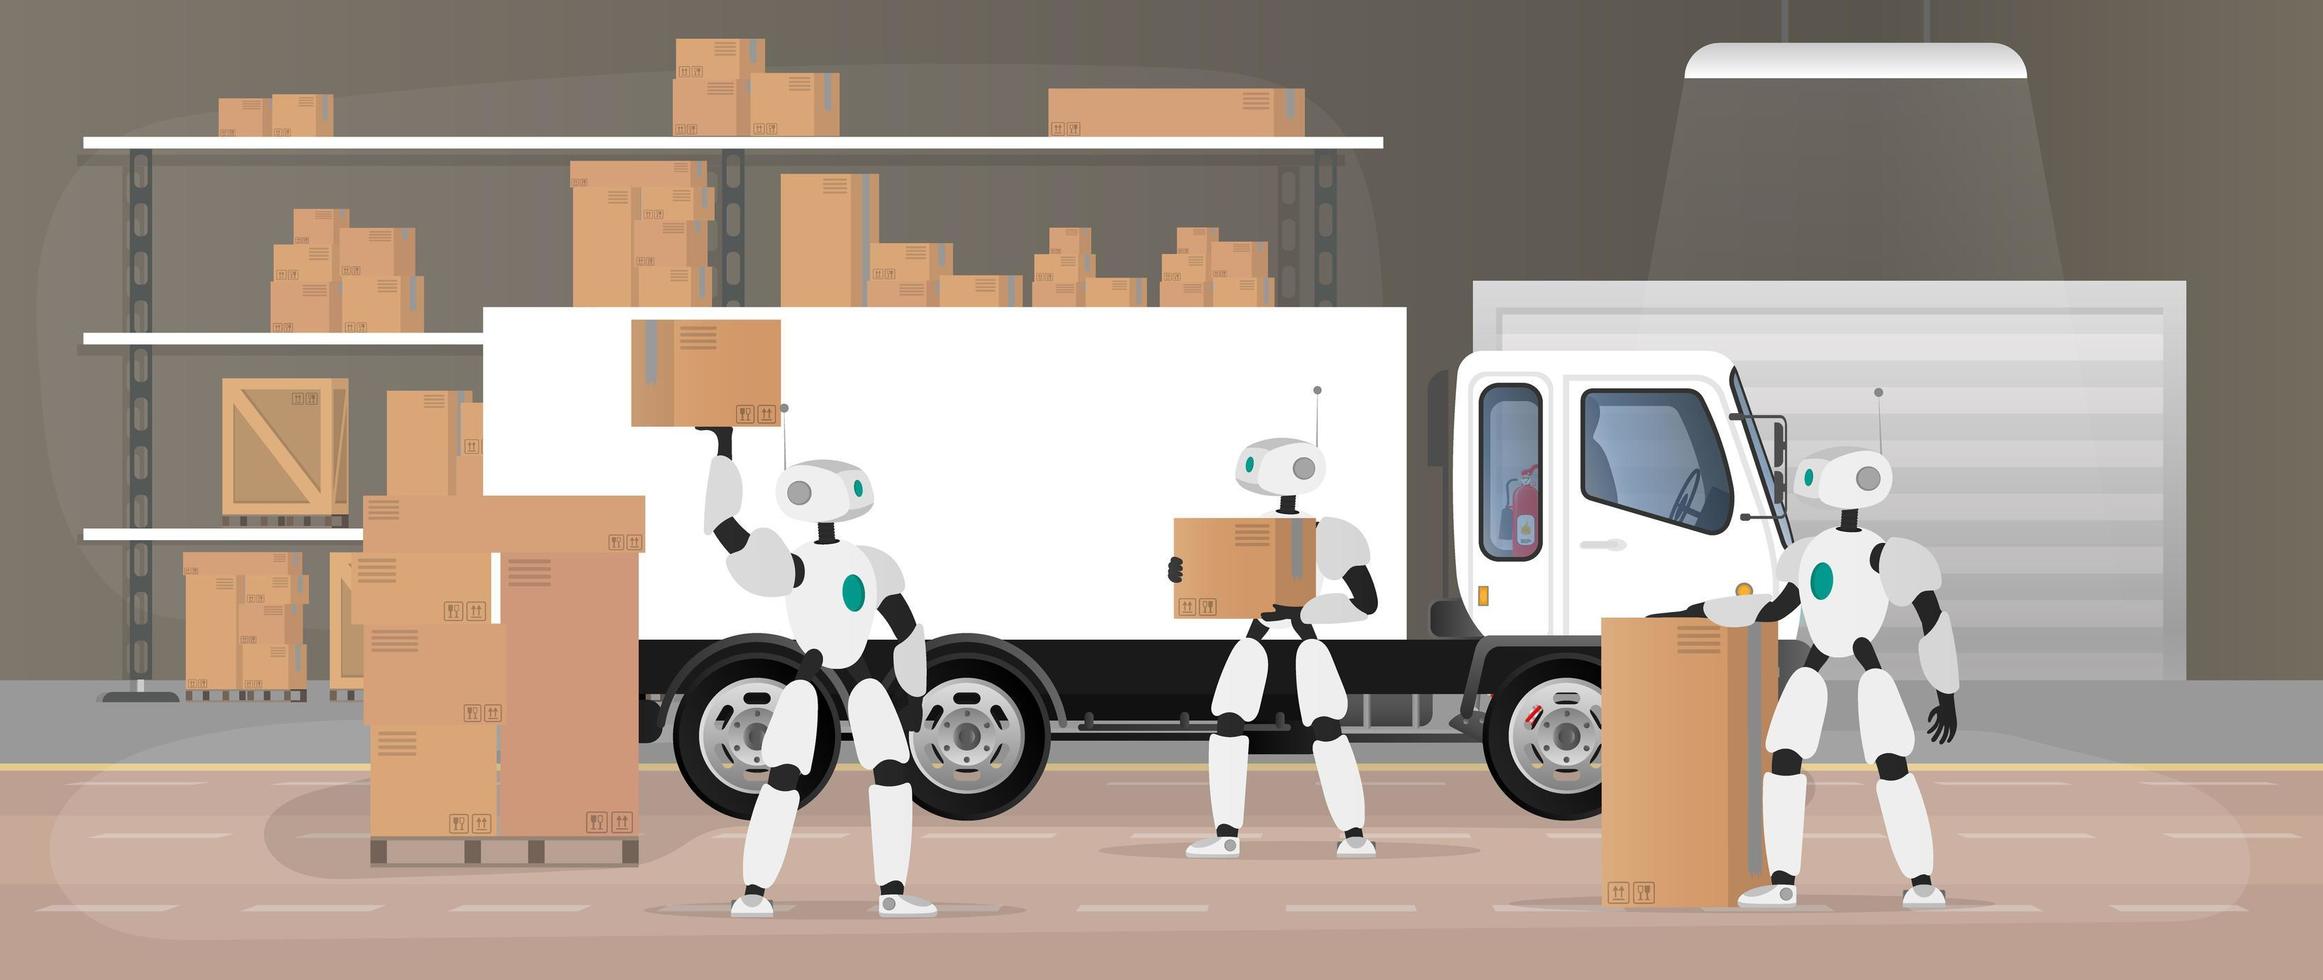 los robots trabajan en un almacén de fabricación. los robots transportan cajas y levantan la carga. concepto futurista de entrega, transporte y carga de mercancías. Gran almacén con cajas y pallets. vector. vector